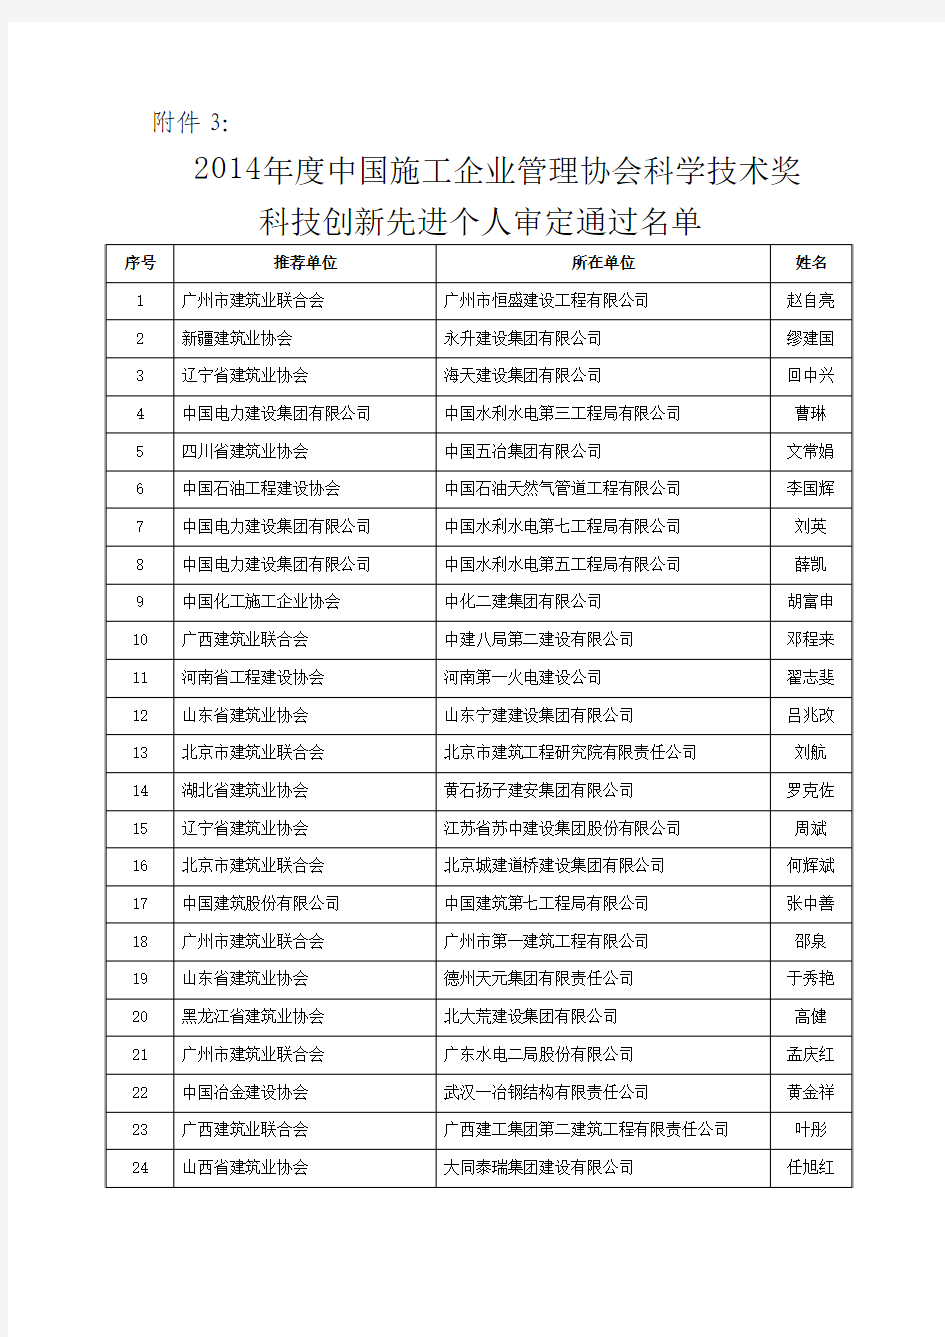 2014年度中国施工企业管理协会科学技术奖科技创新先进个人审定通过名单